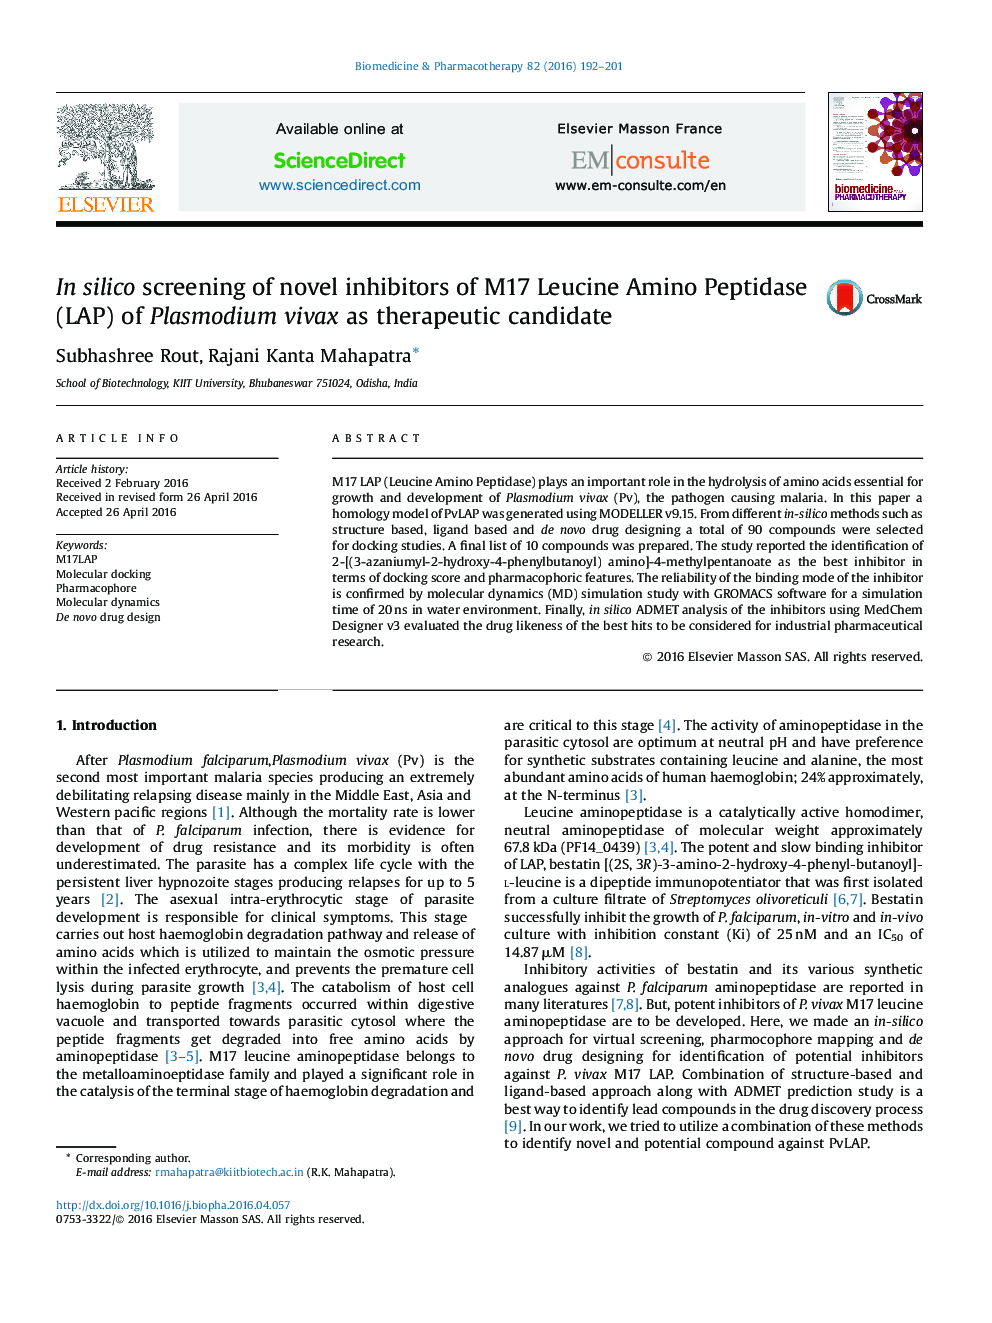 In silico screening of novel inhibitors of M17 Leucine Amino Peptidase (LAP) of Plasmodium vivax as therapeutic candidate